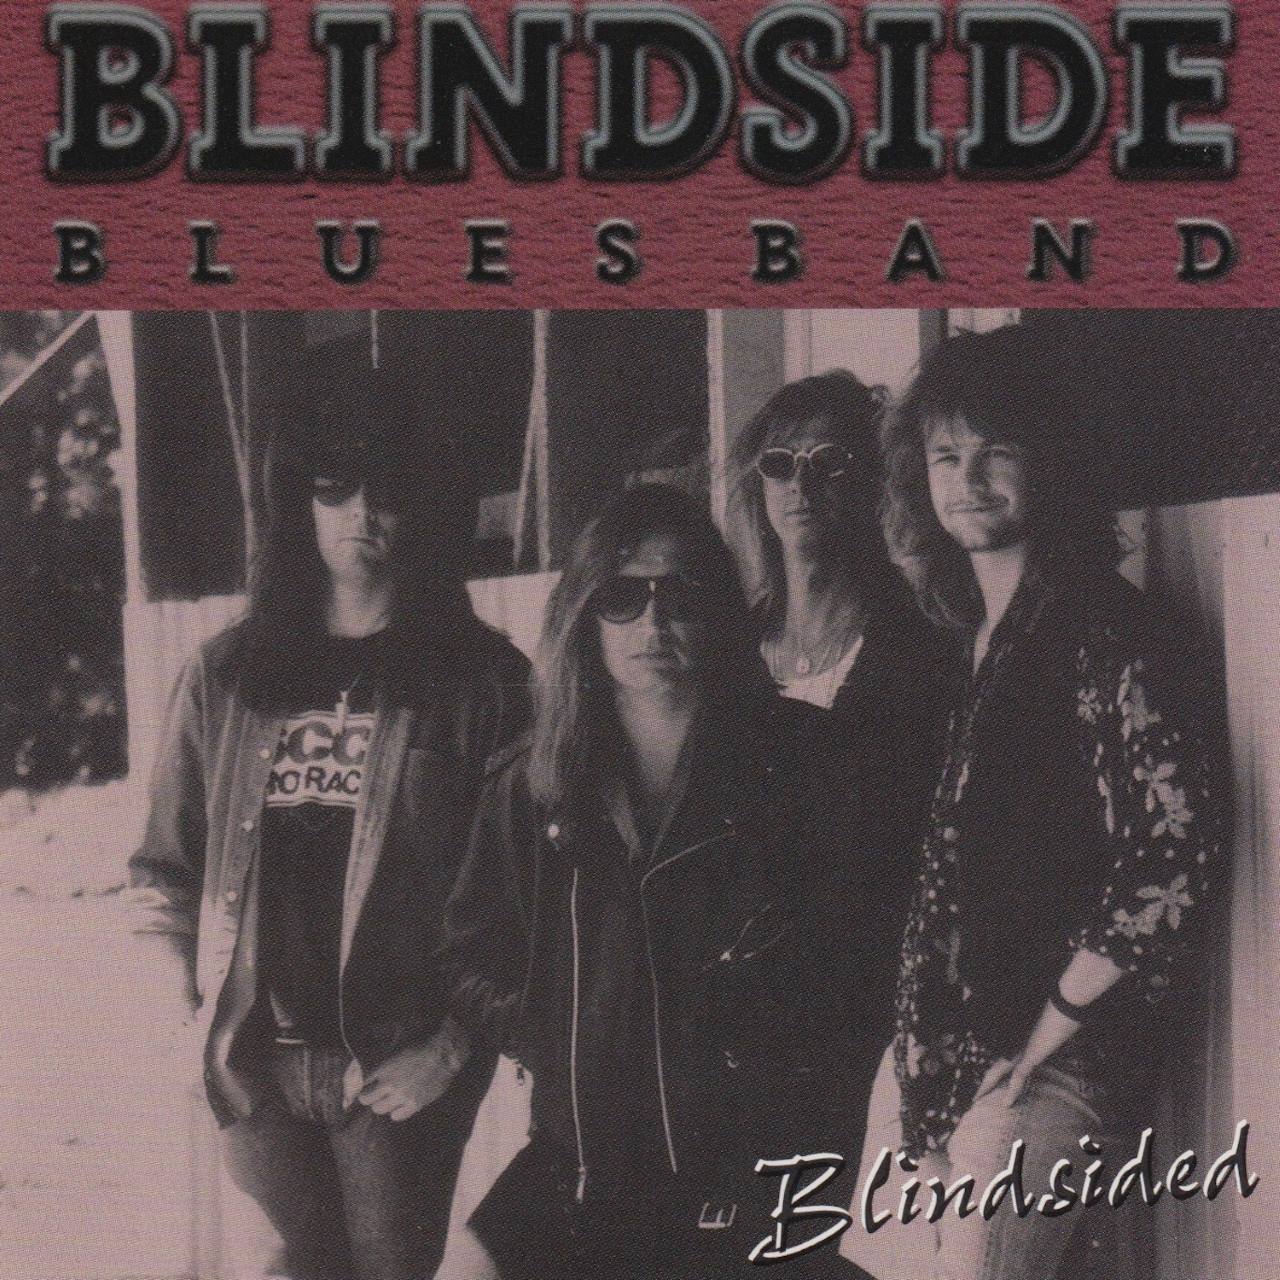 Blindside Blues Band – Blindsided cover album